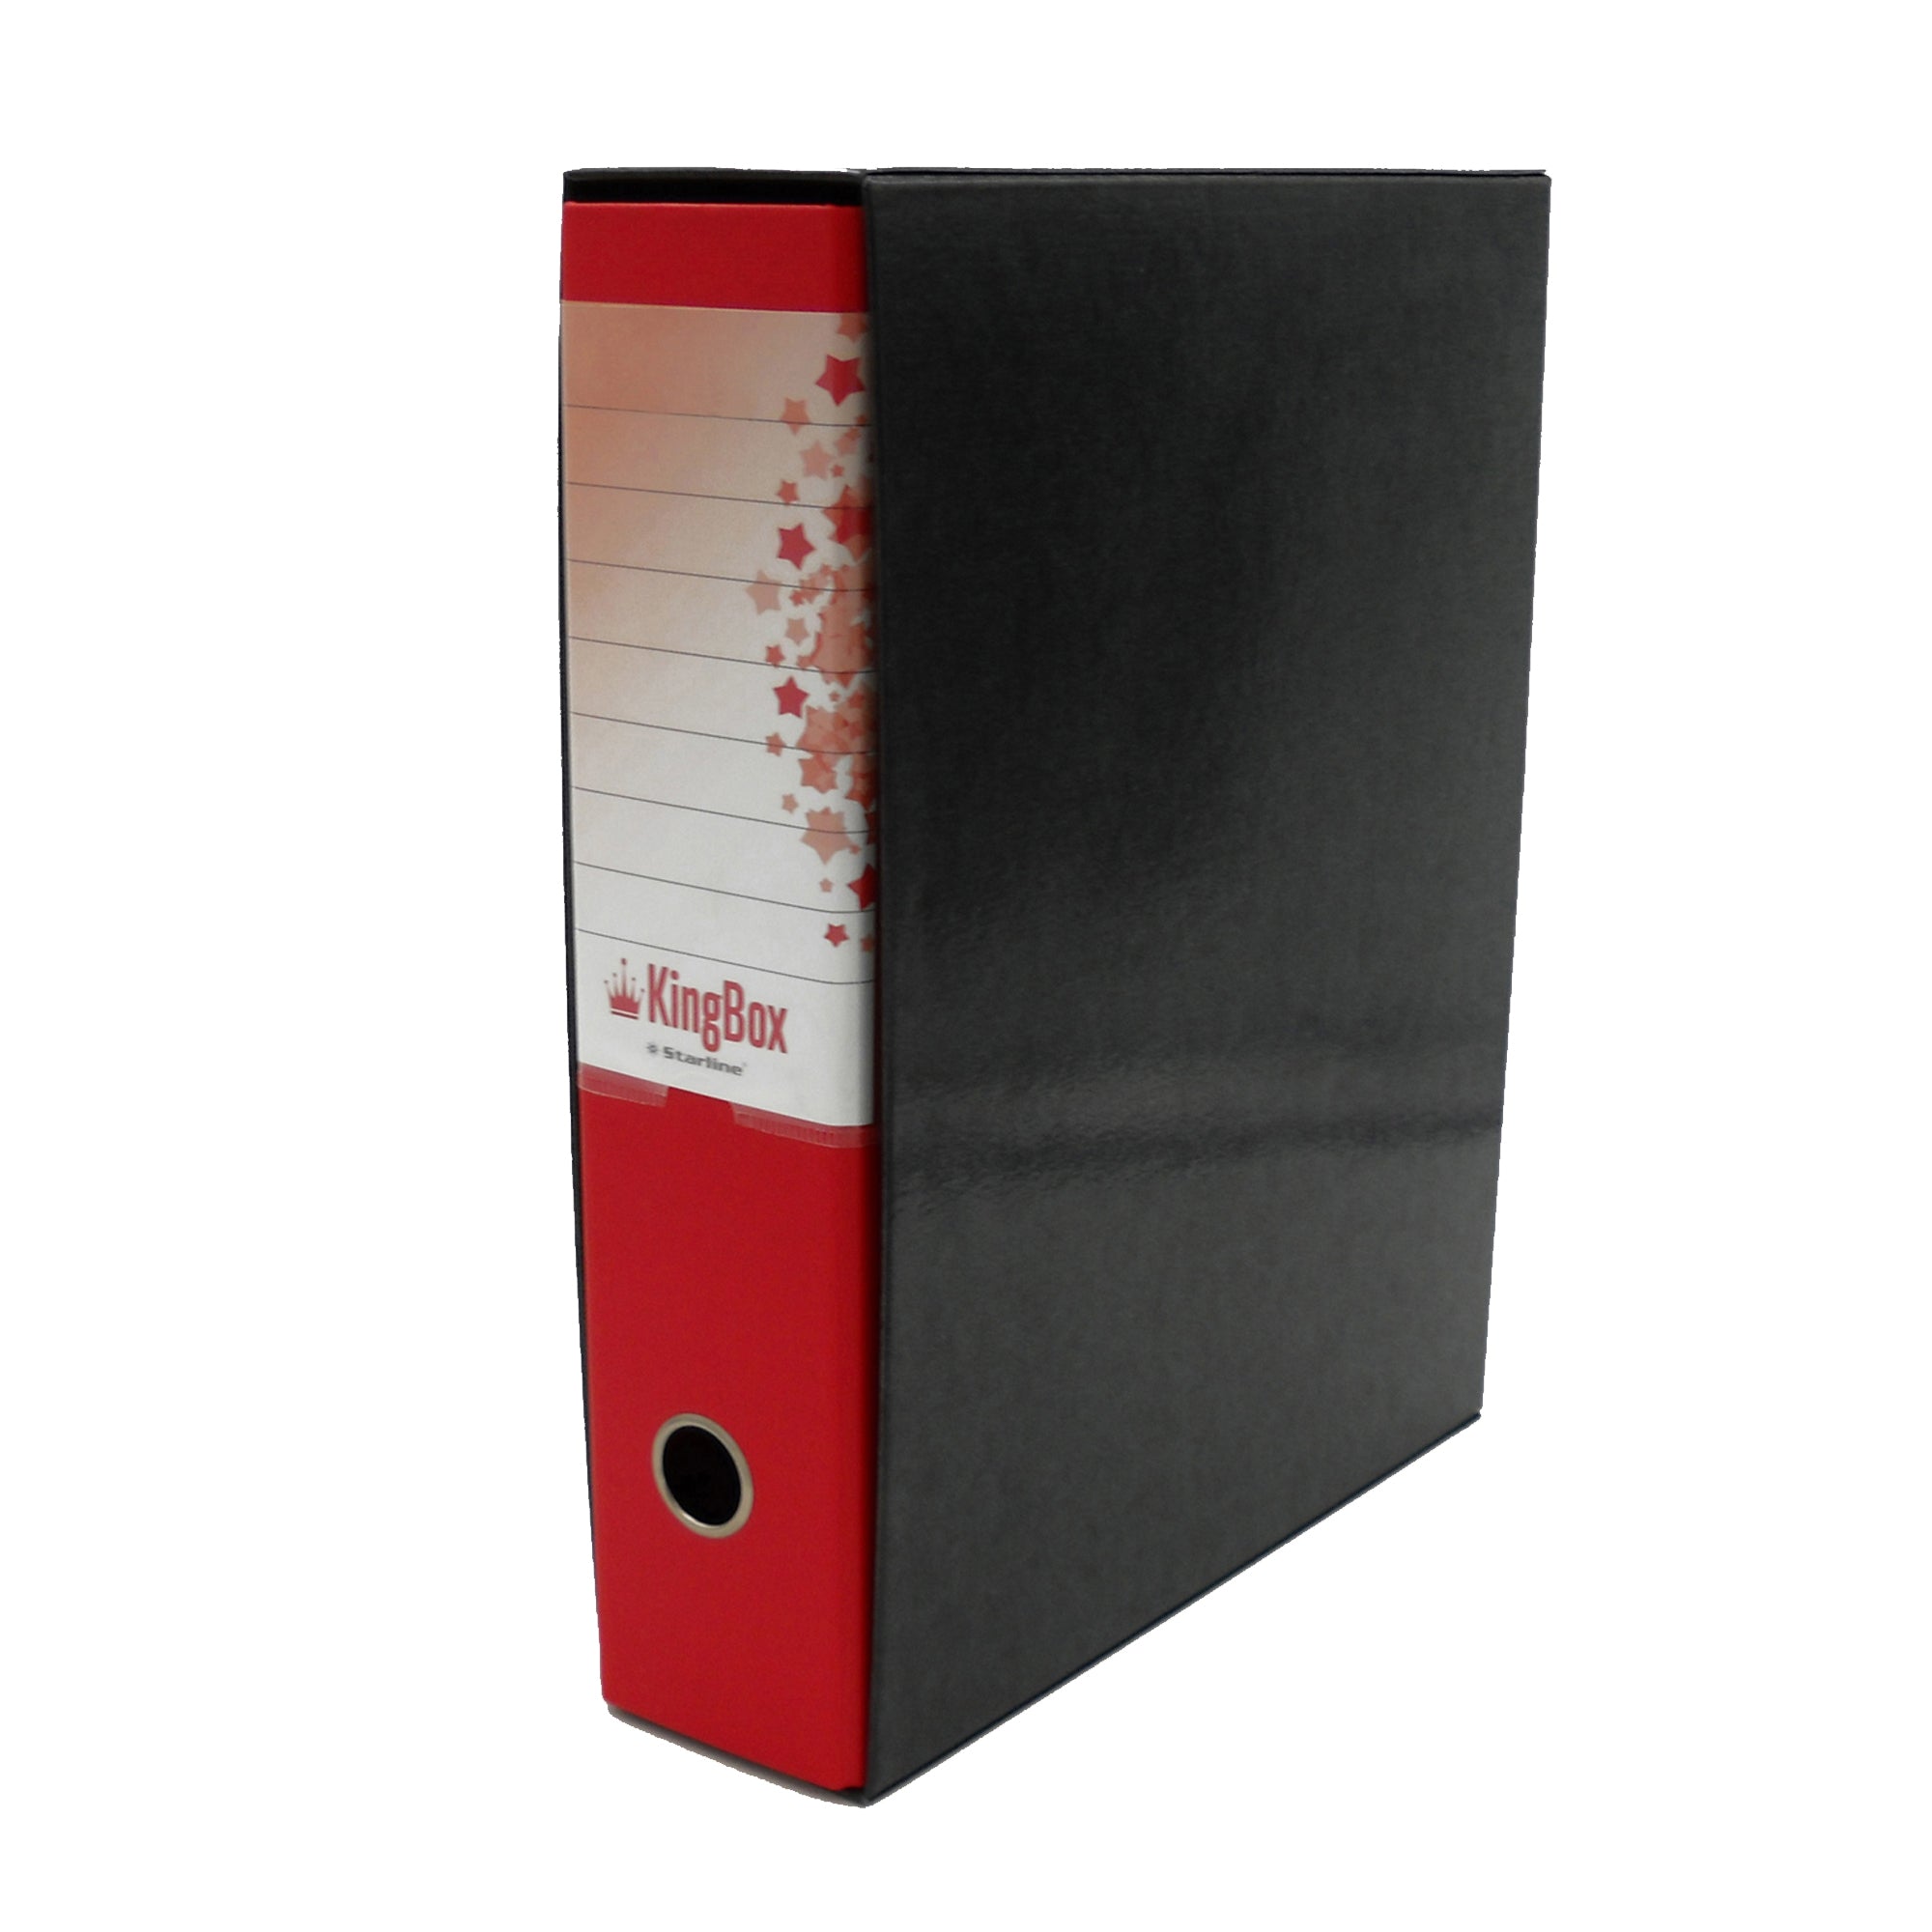 starline-registratore-kingbox-f-to-protocollo-dorso-8cm-rosso